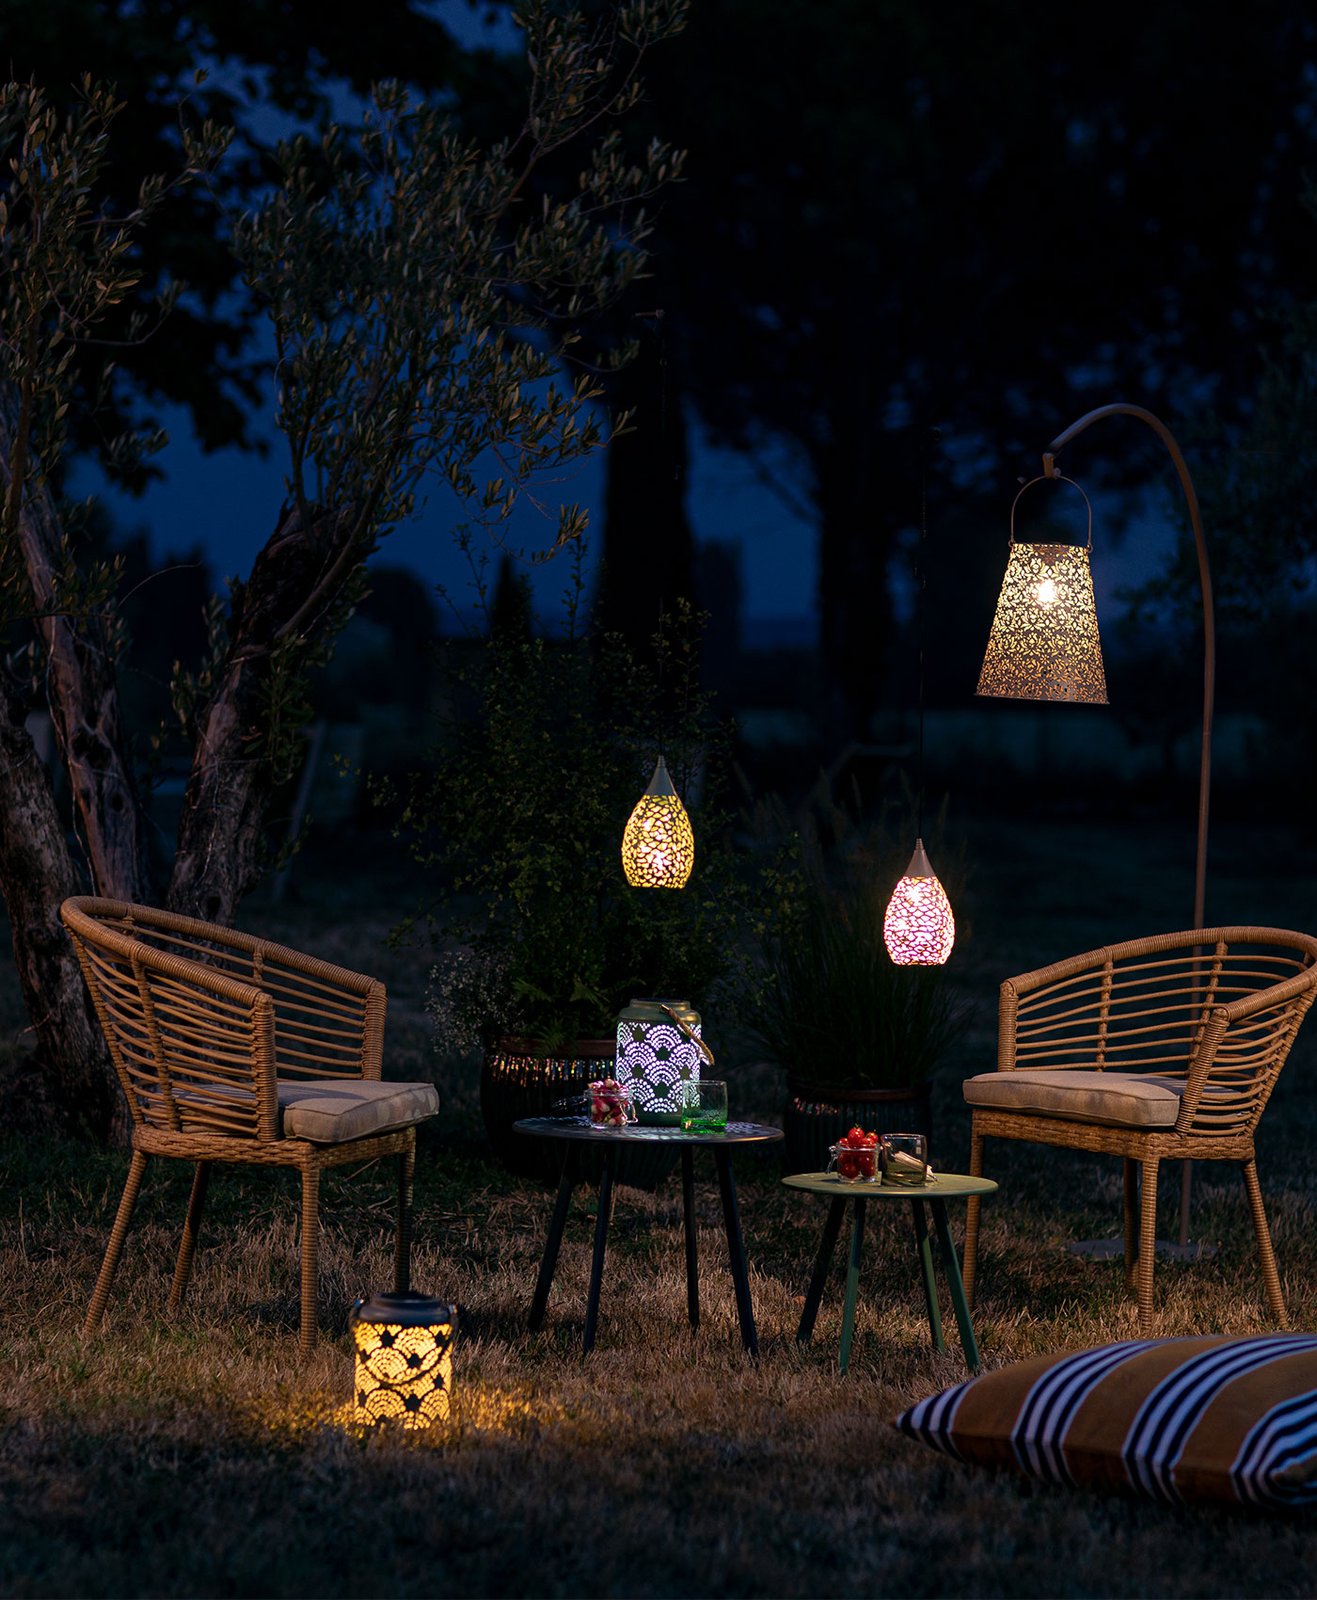 Salon de jardin illuminé avec des lanternes